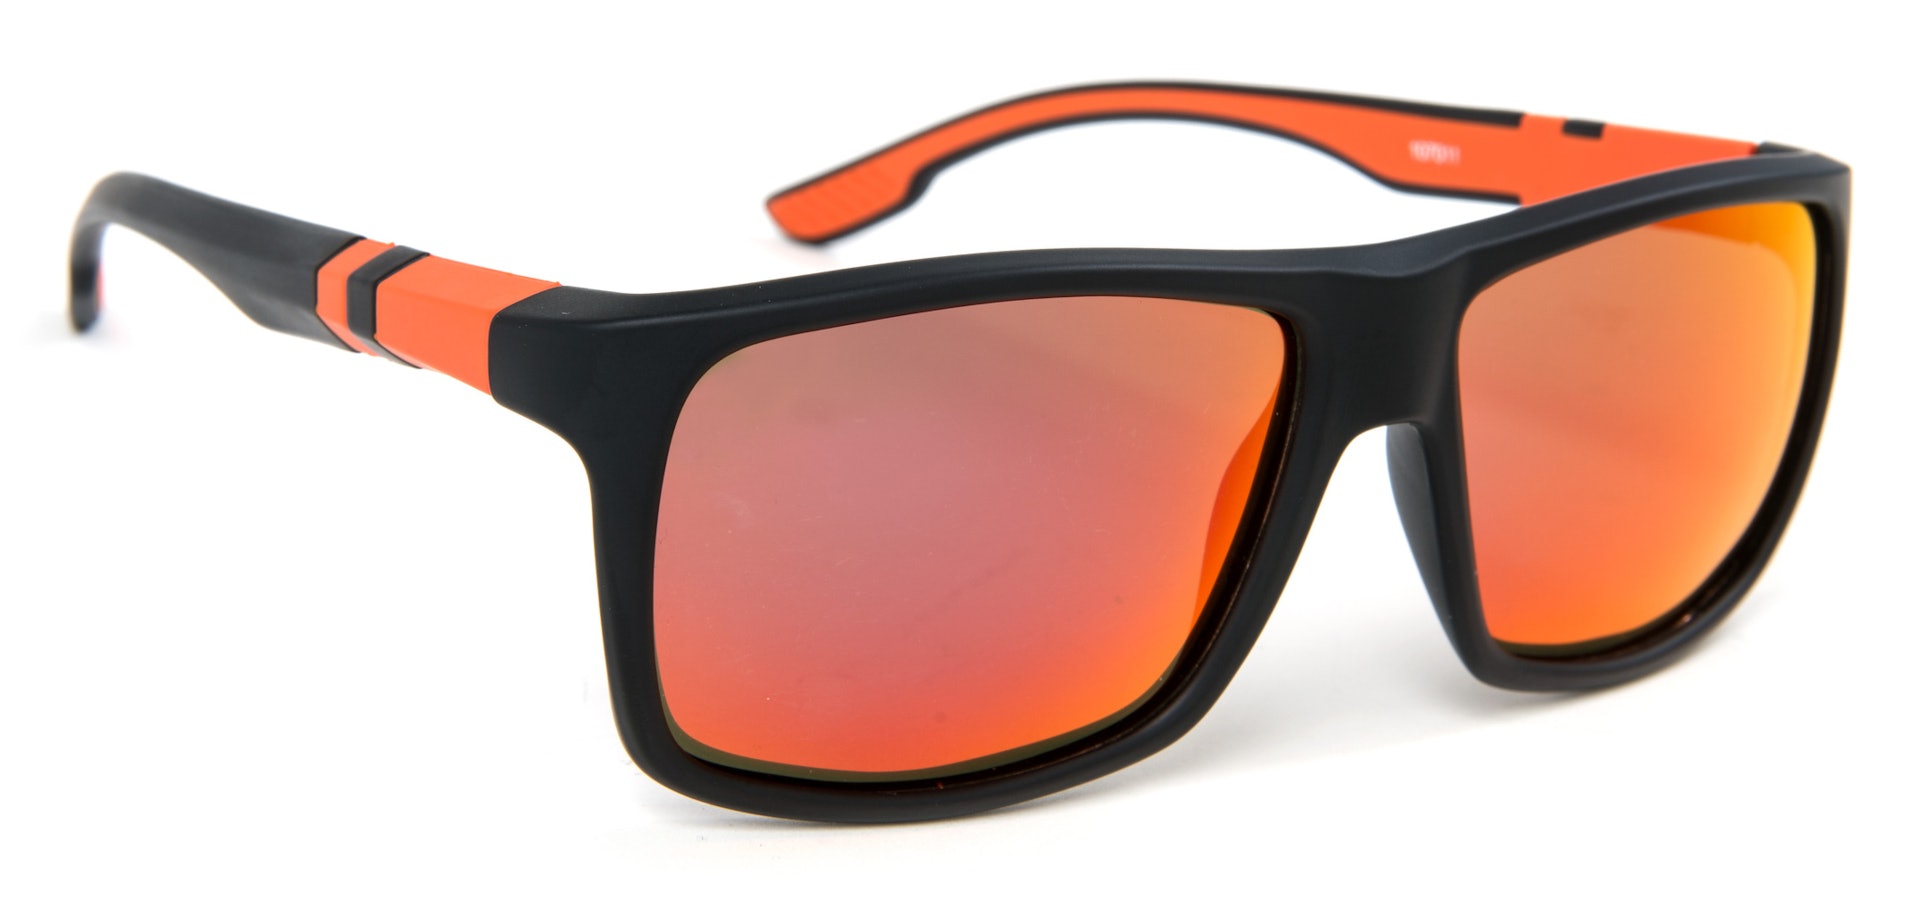 LPX Sunglasses - Amber Lens (bild 1 av 2)